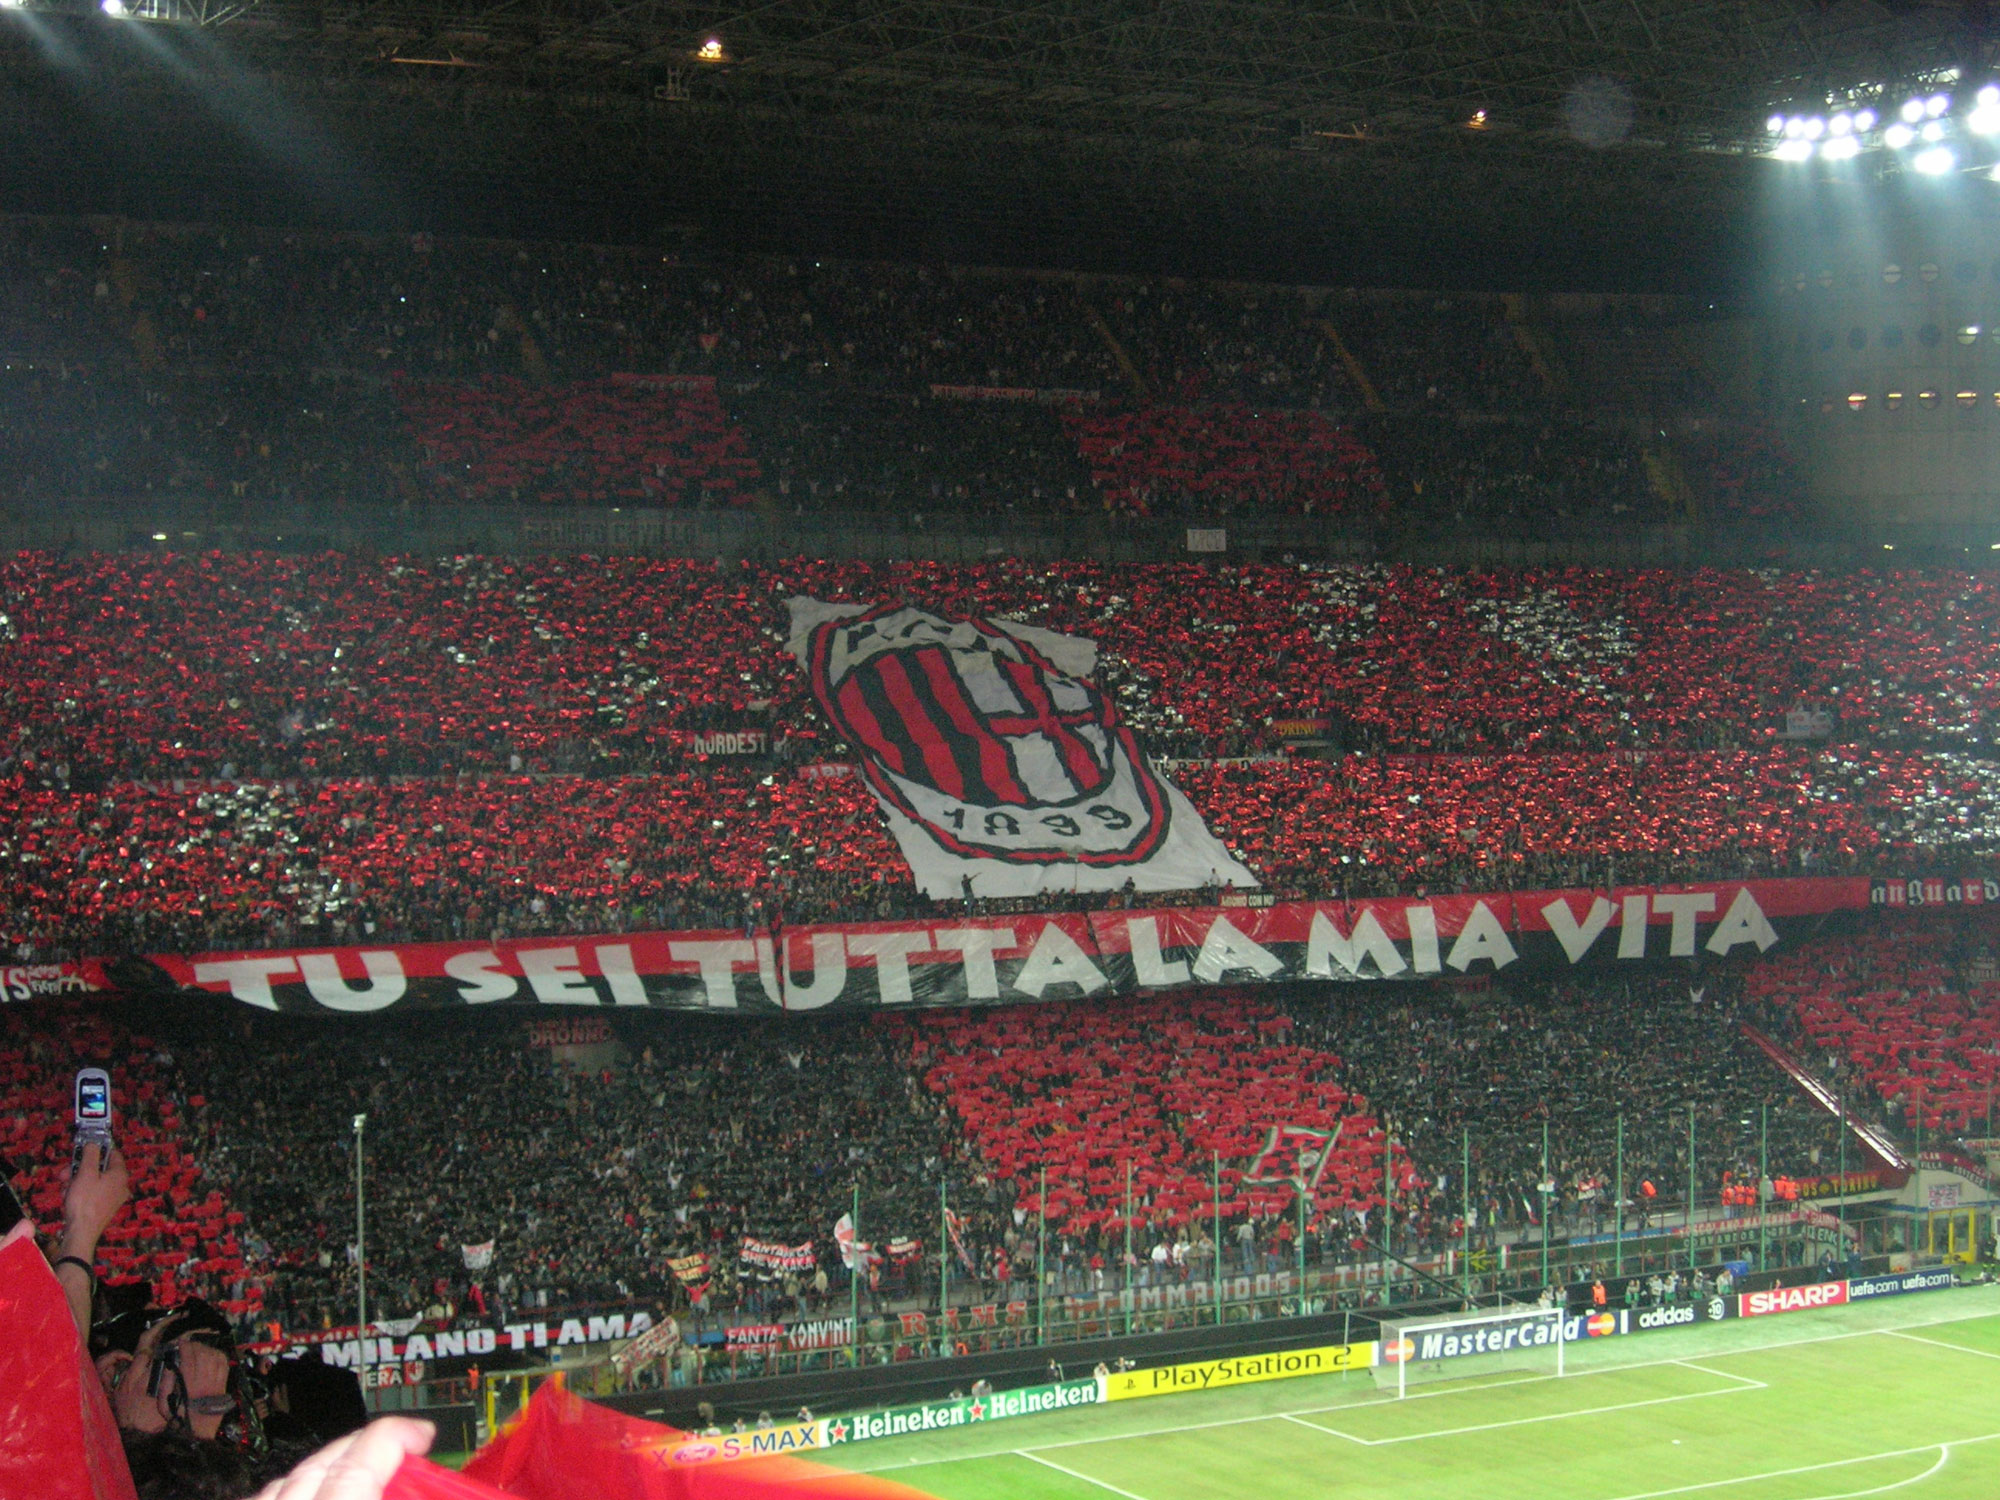 L’arbitro di Napoli-Milan aggredito verbalmente all’uscita dallo stadio San Siro – VIDEO